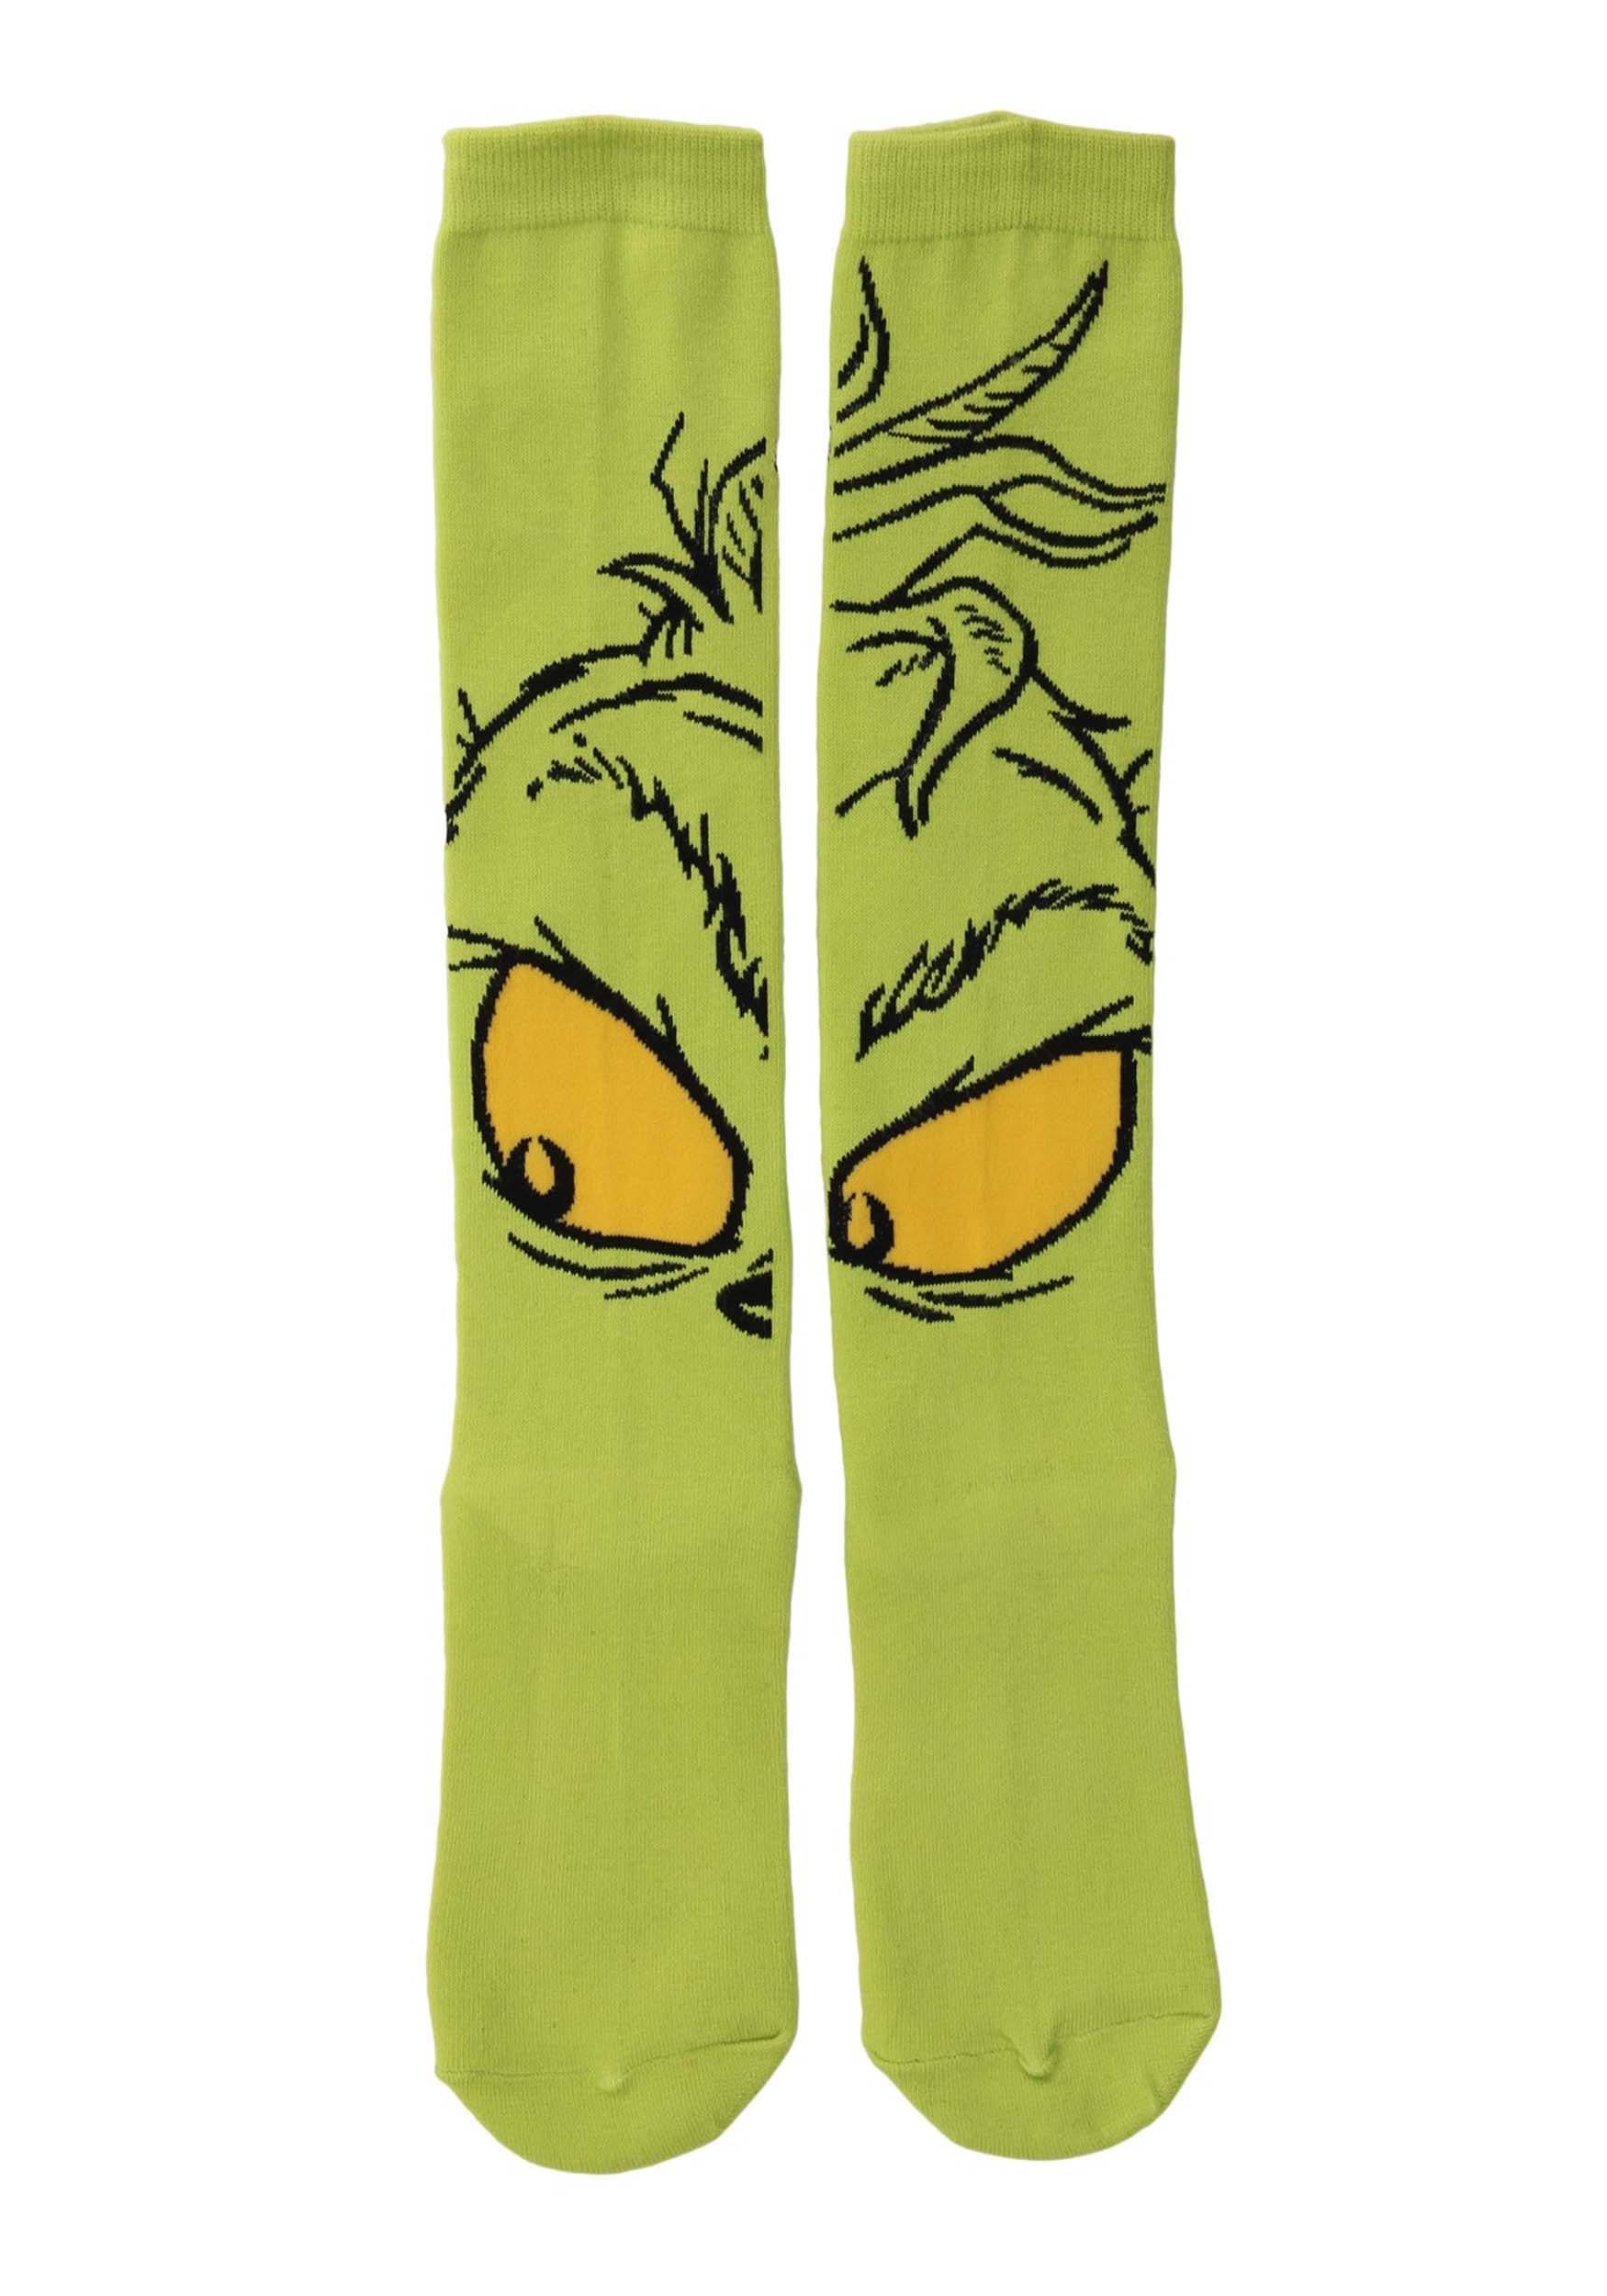 Grinch Knee High Socks for Women